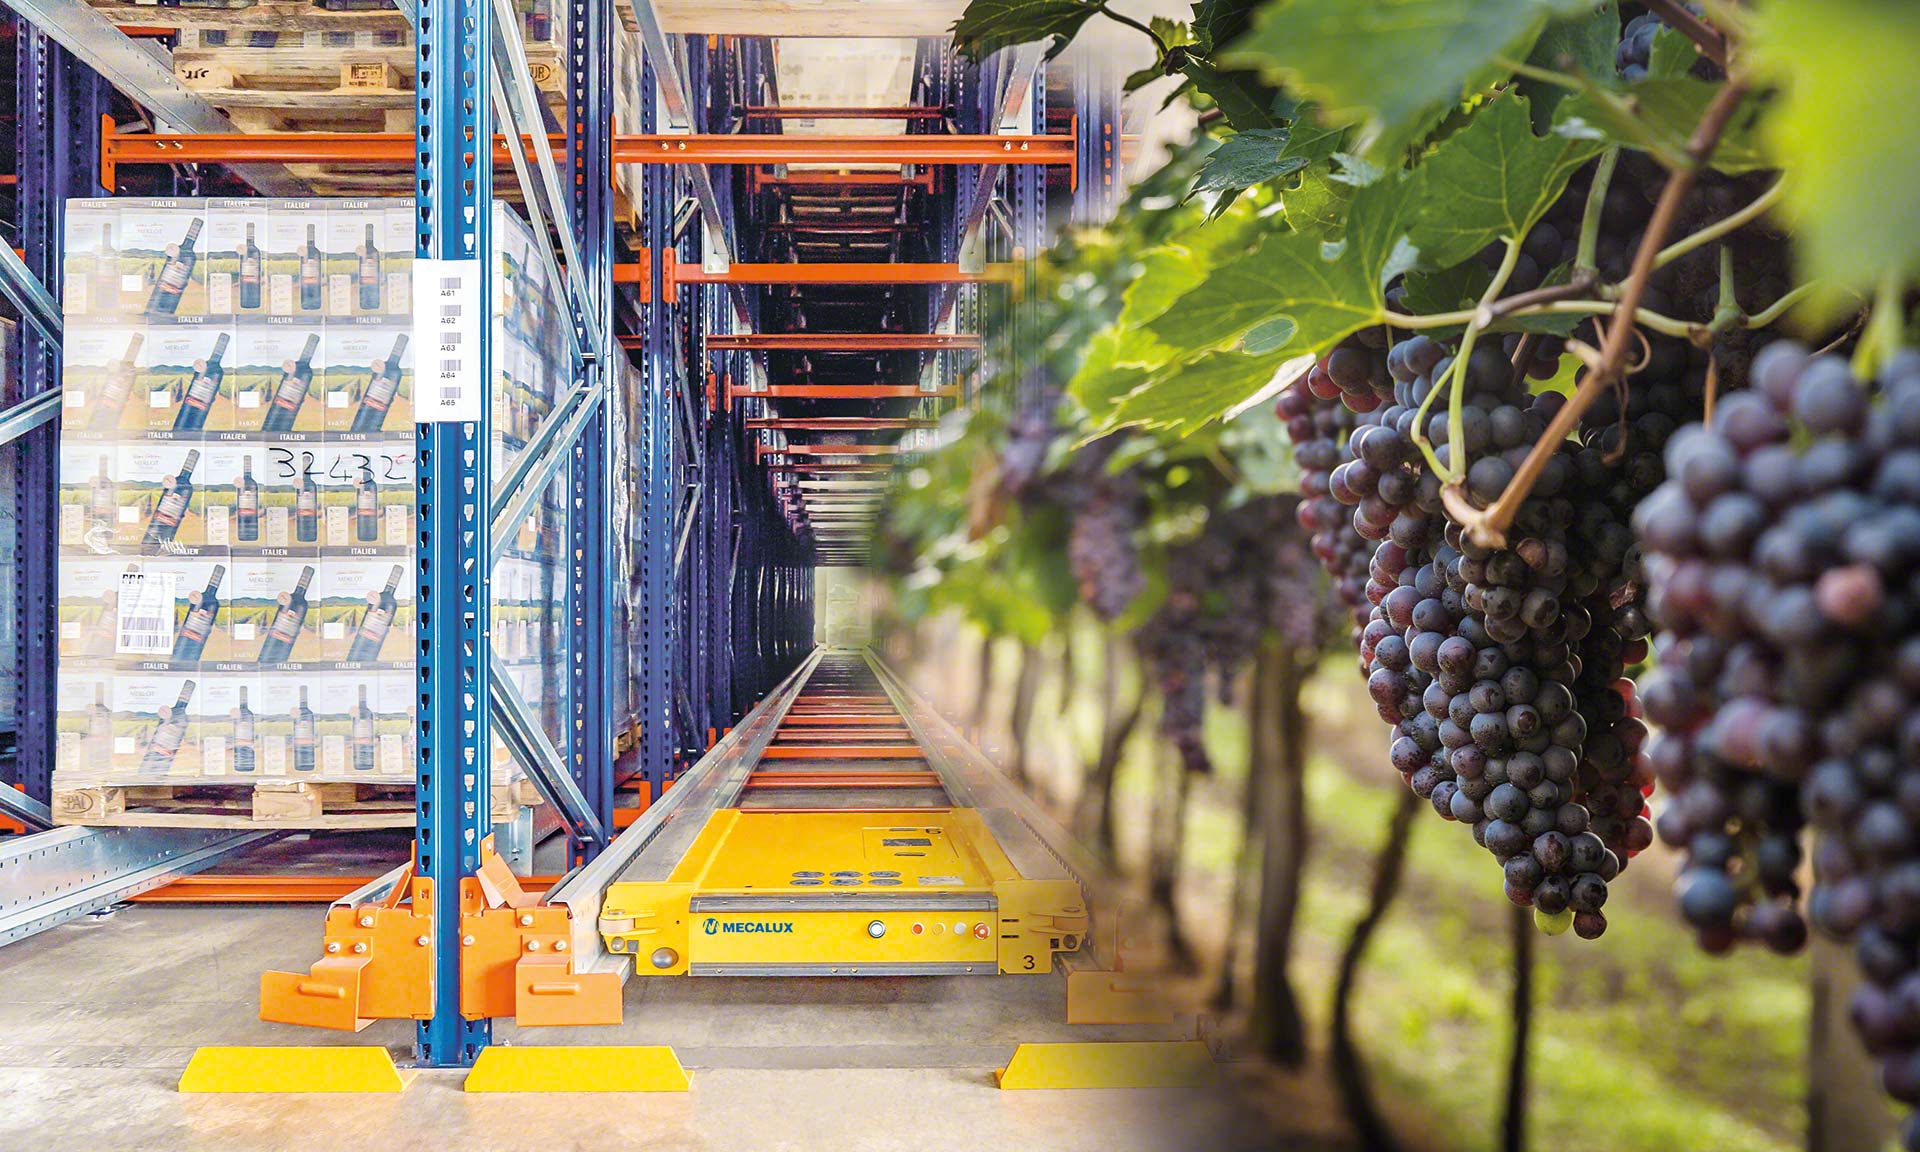 Automatyzacja magazynu zwiększa wydajność i bezpieczeństwo przechowywania wina